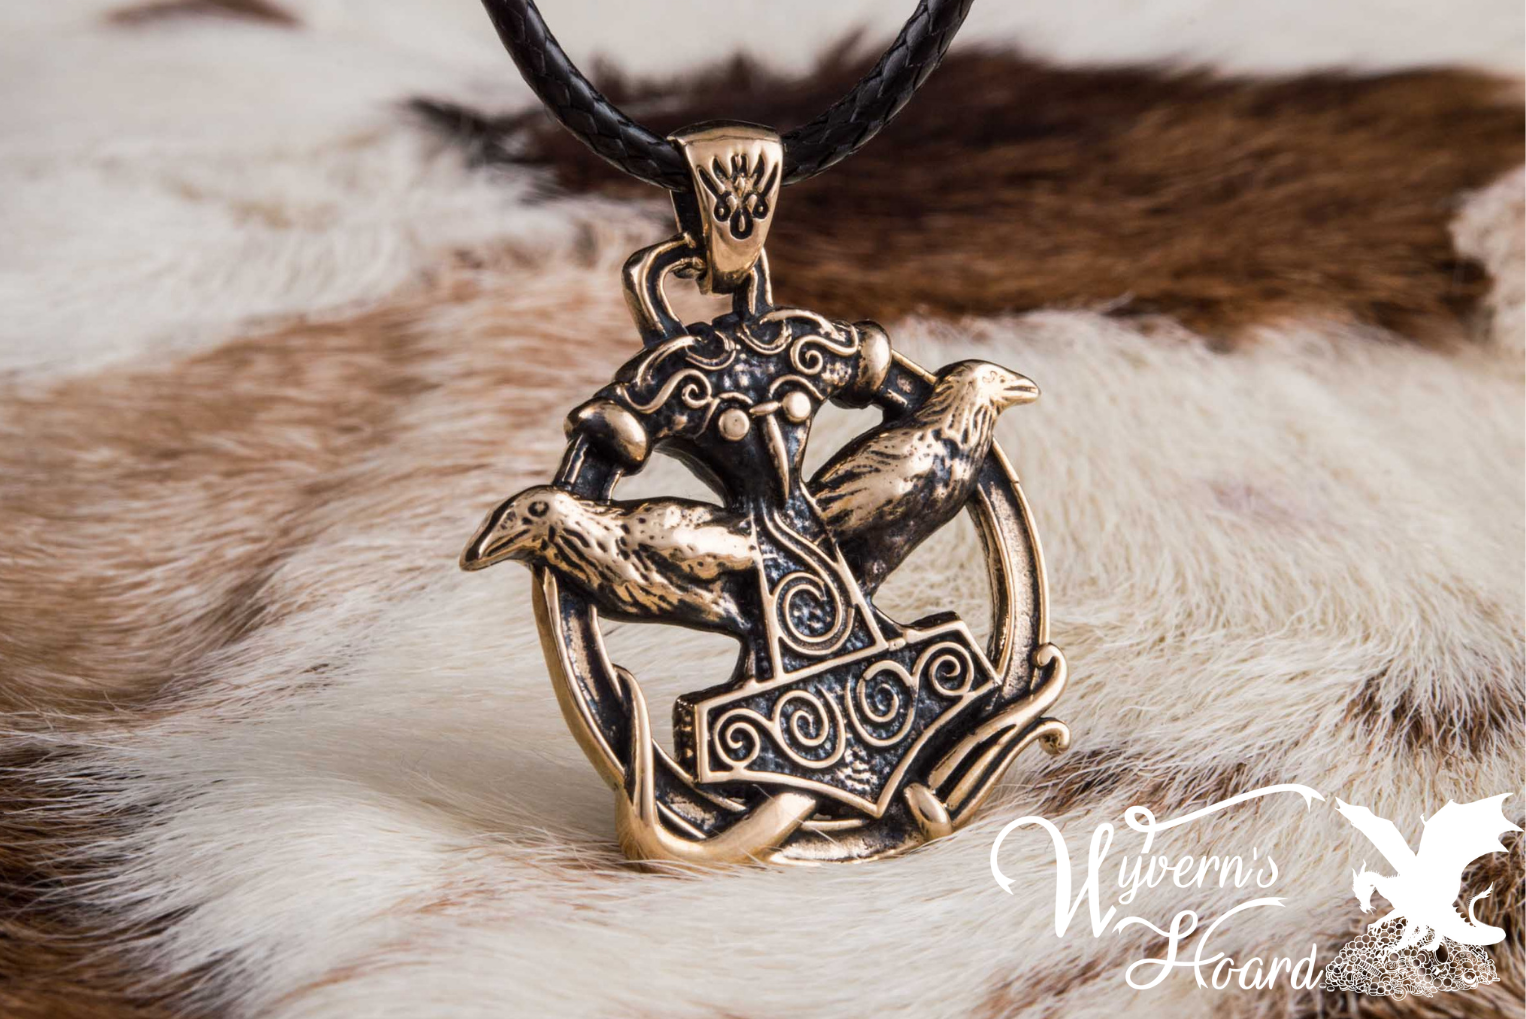 Mjölnir & Odin's Ravens Talisman Necklace